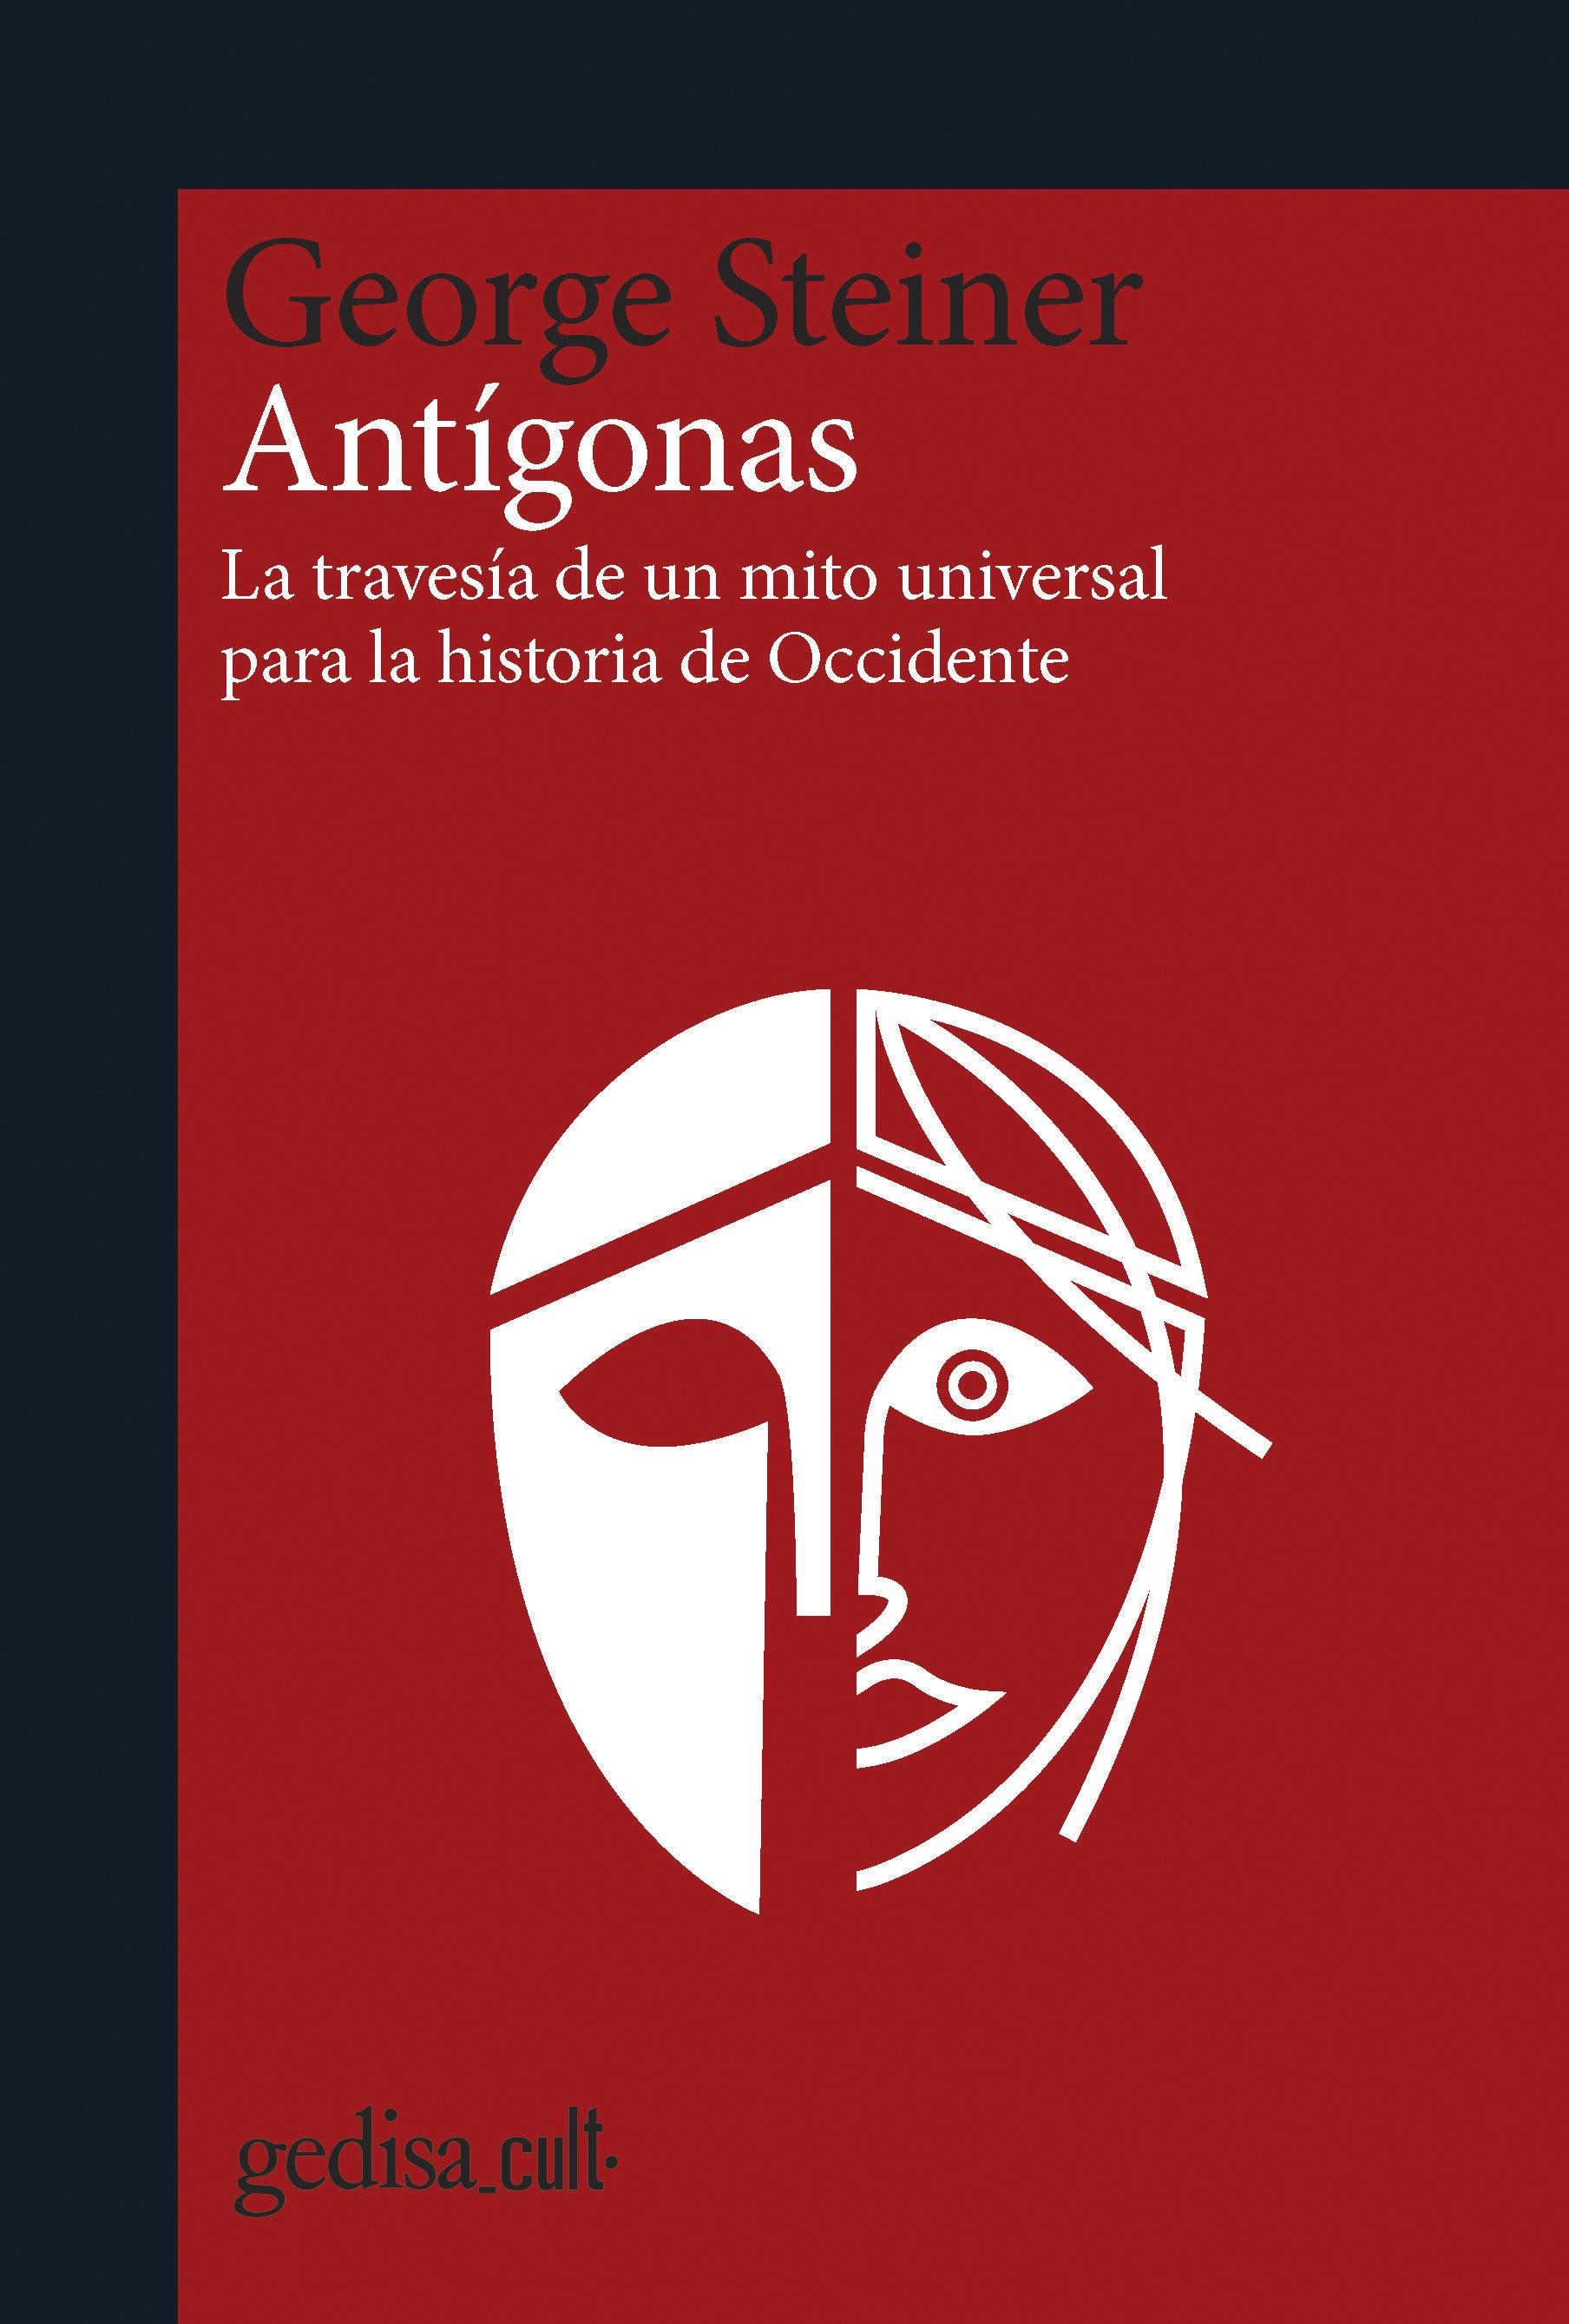 Antígonas "La travesía de un mito universal para la Historia"